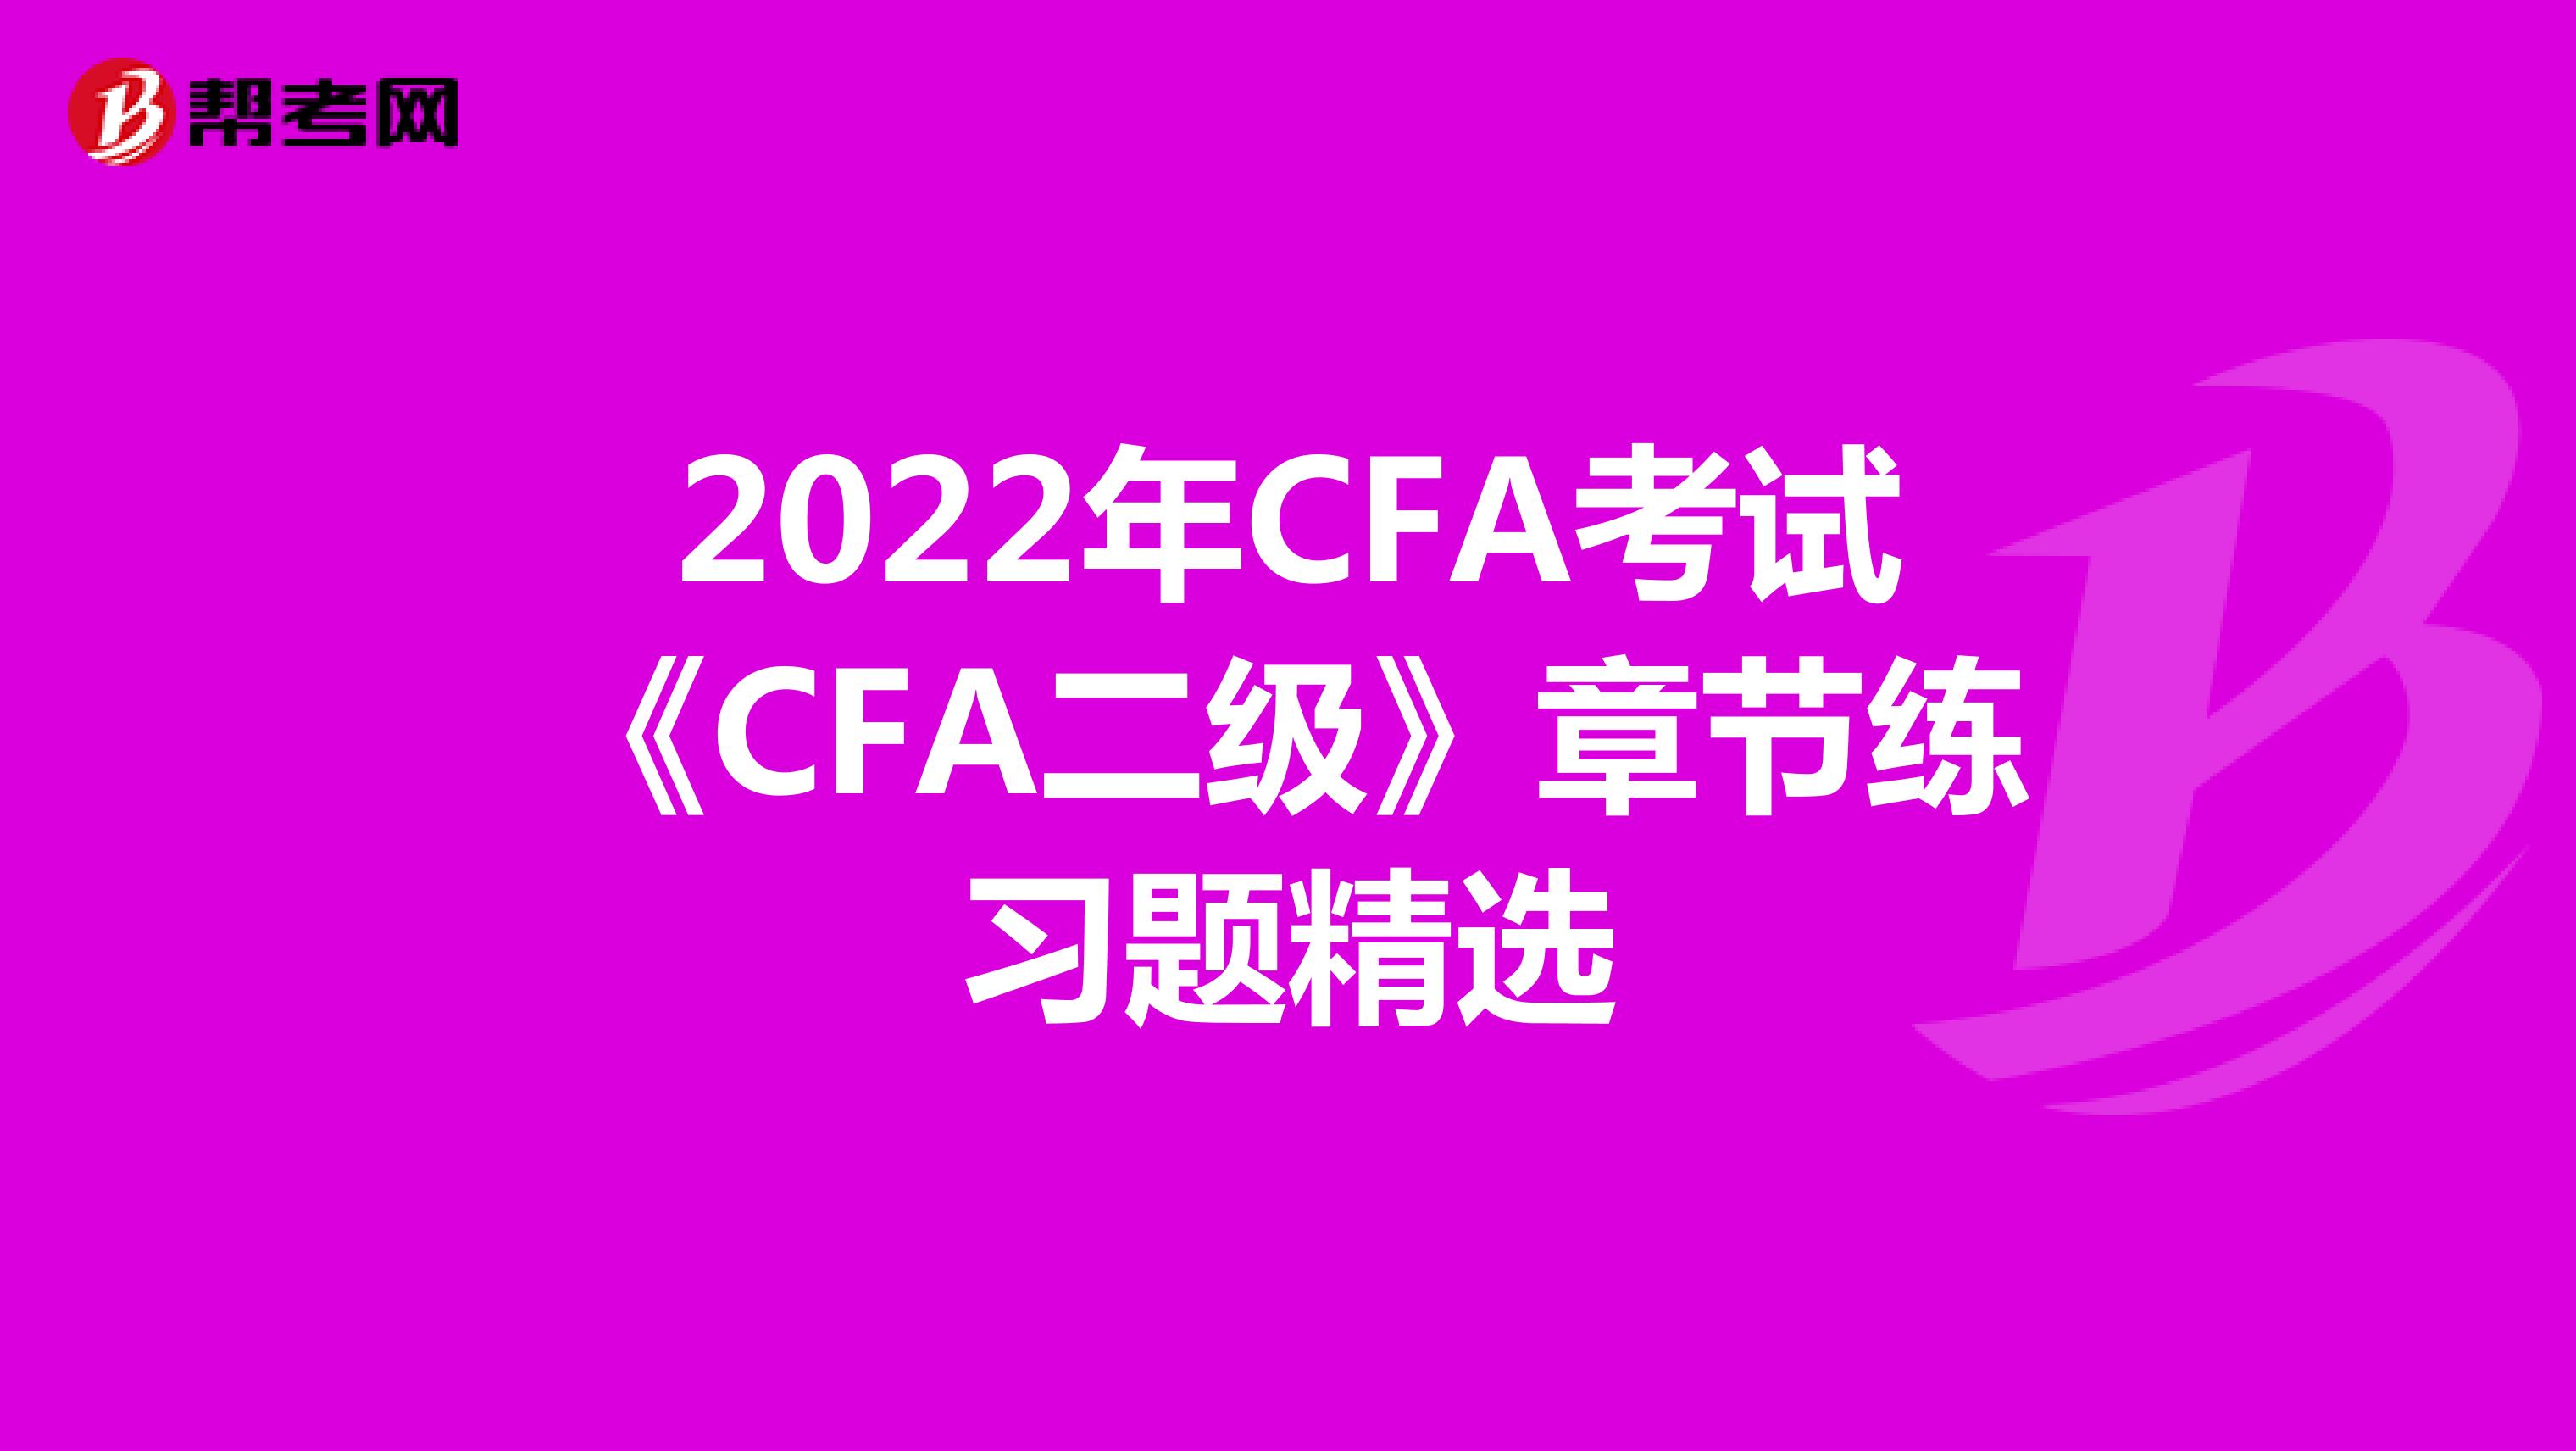 2022年CFA考试《CFA二级》章节练习题精选